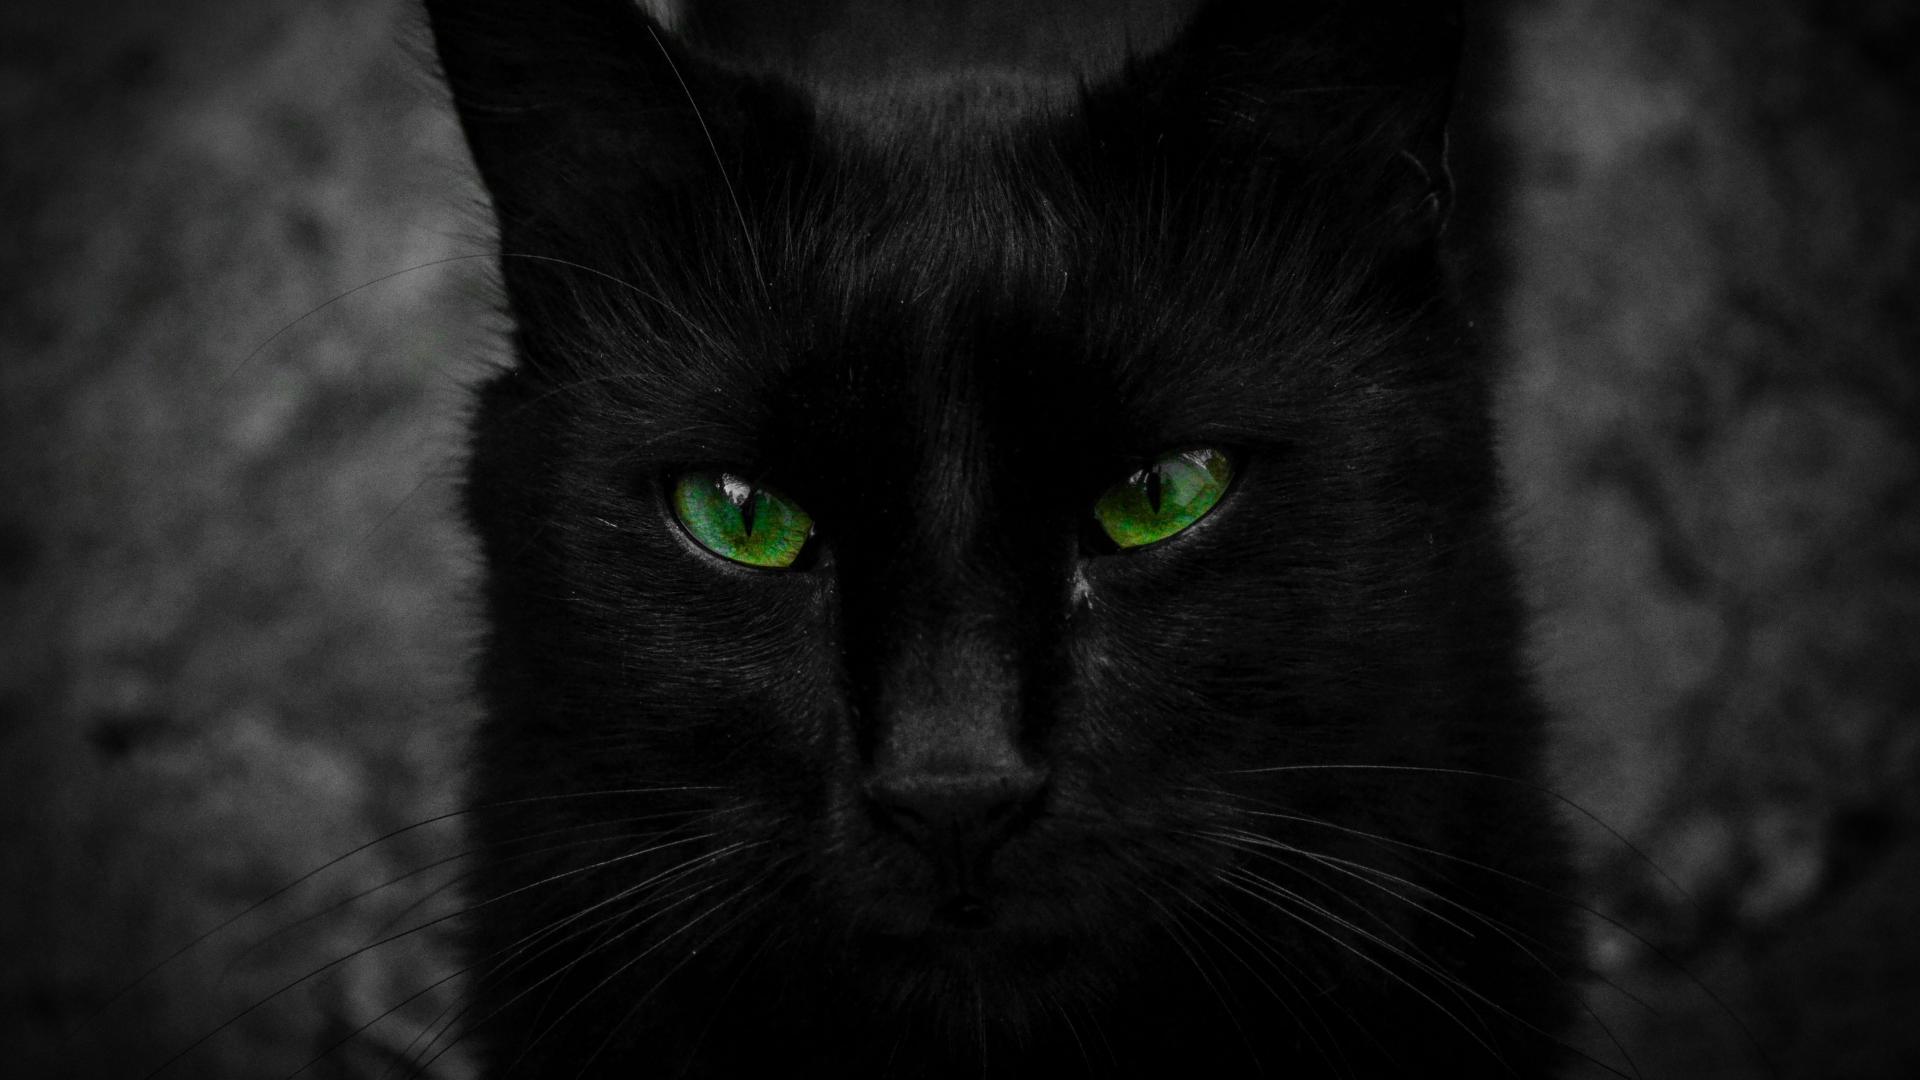 Mèo đen mắt xanh: Mèo đen là một biểu tượng của sự quý phái và độc đáo. Khi được kết hợp với đôi mắt xanh, chúng trở nên cực kỳ thú vị và độc đáo, tạo nên vẻ đẹp không thể so sánh được. Xem các hình ảnh của mèo đen mắt xanh để nhận ra tại sao chúng lại được yêu thích đến thế!